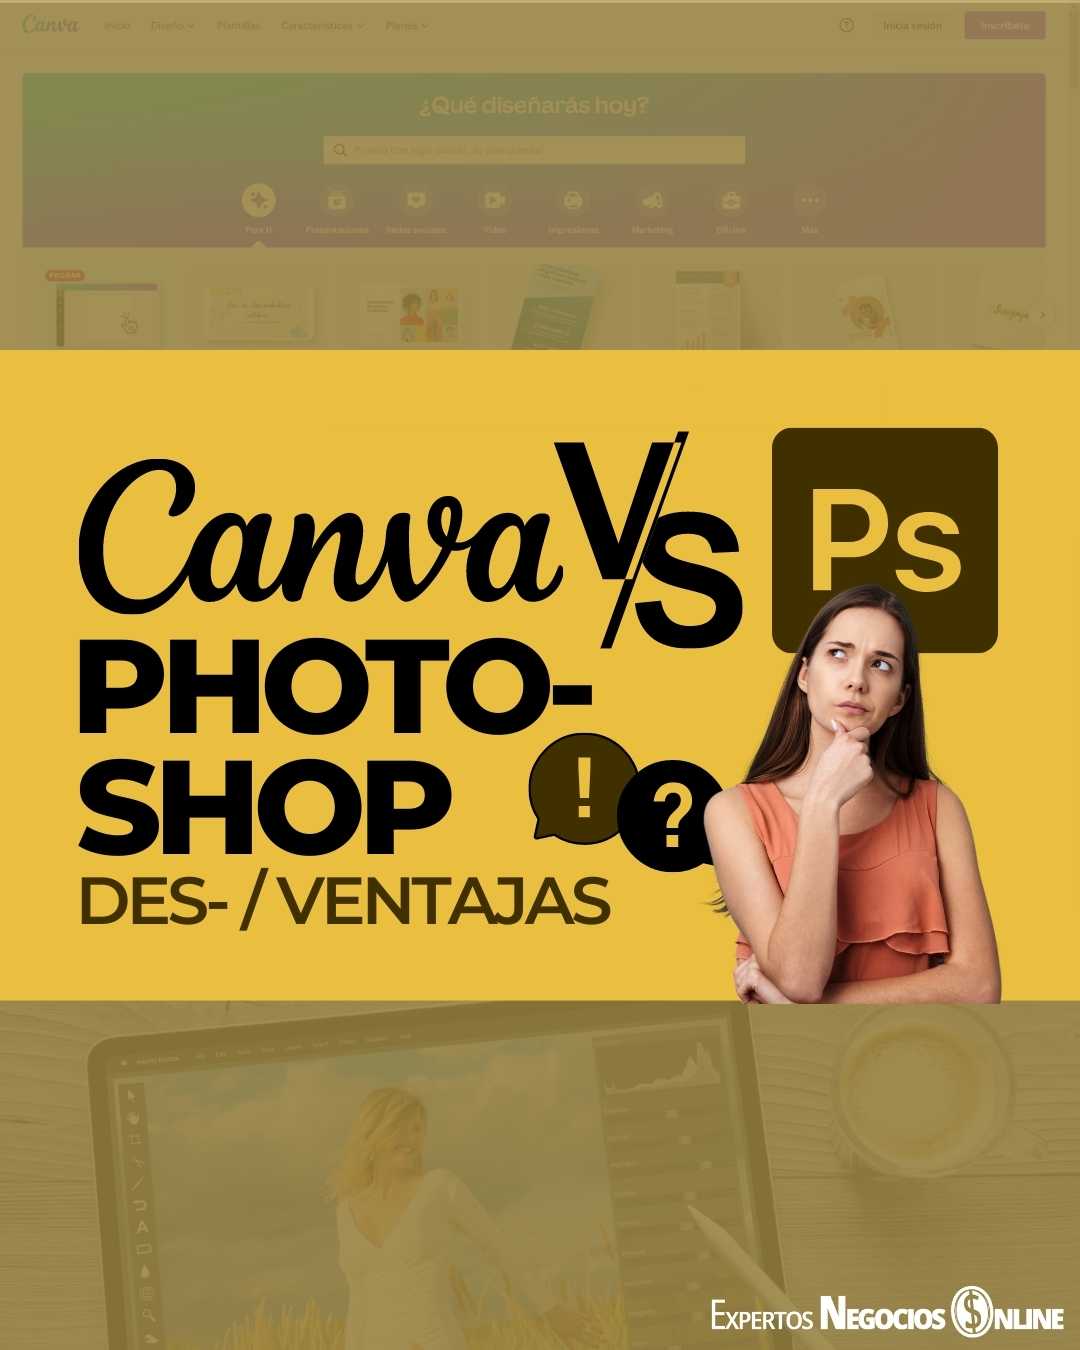 Canva vs Photoshop - Ventajas y desventajas